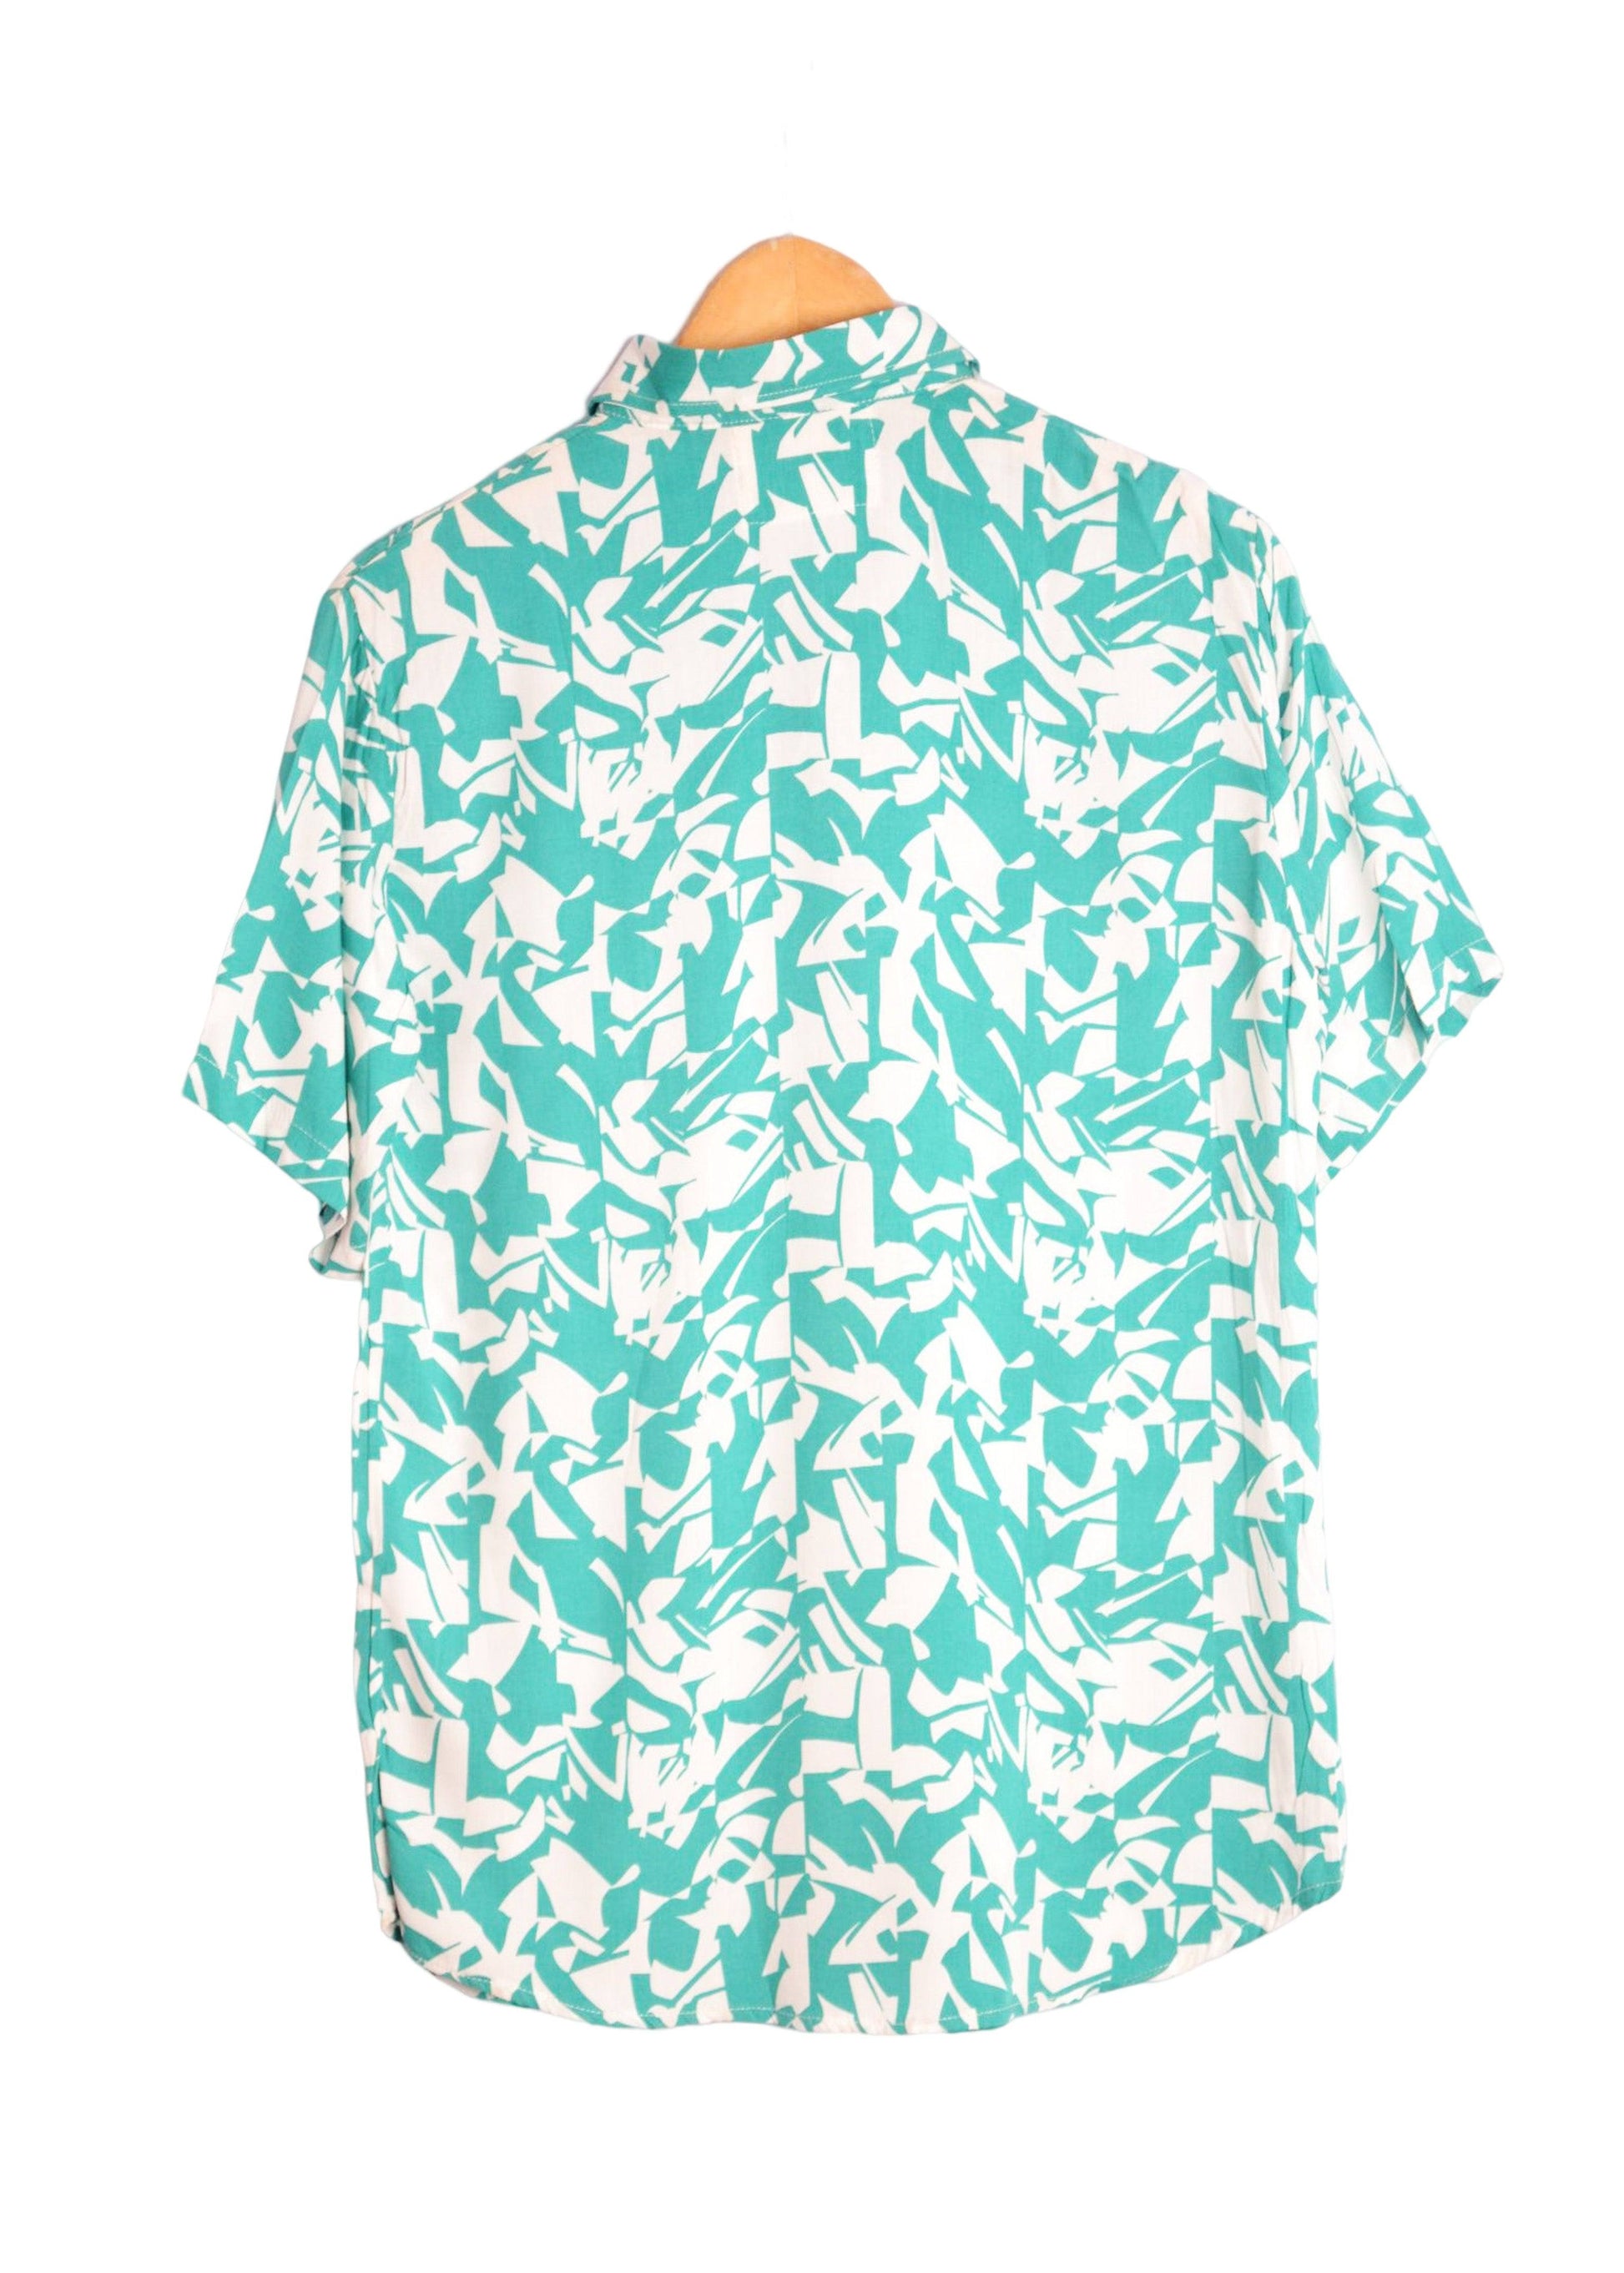 Vue dos chemise homme à motifs géometriques couleur turquoise et blanc - GL BOUTIK